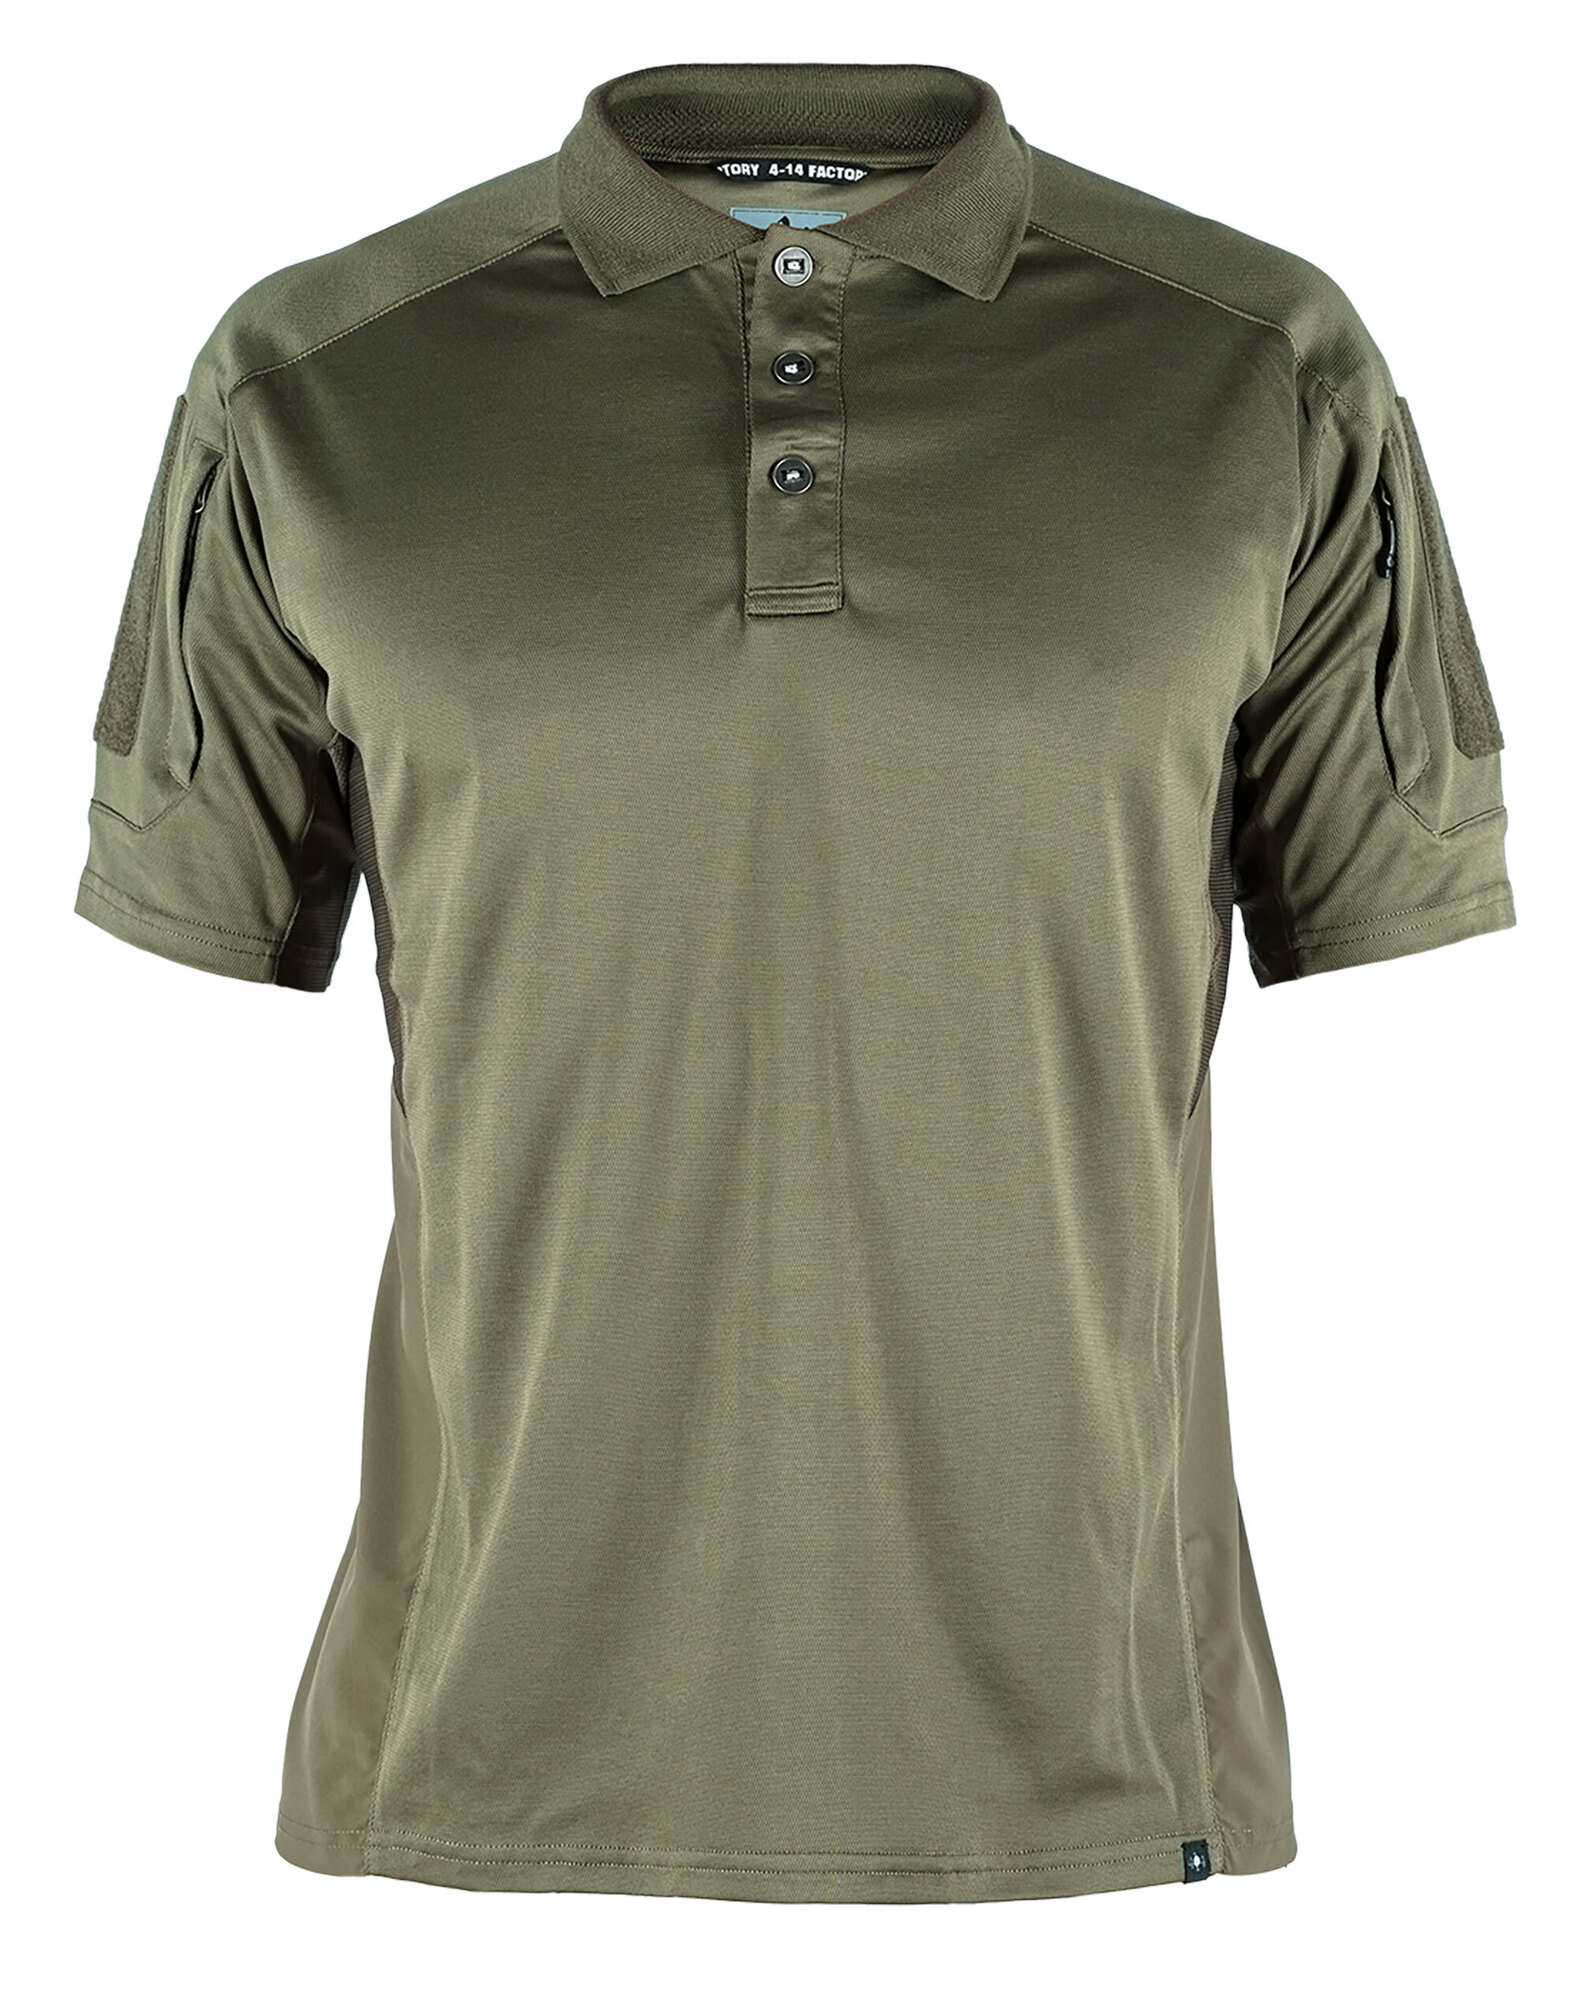 Levně Polo košile Perfomance 4-14 Factory® – Ranger Green